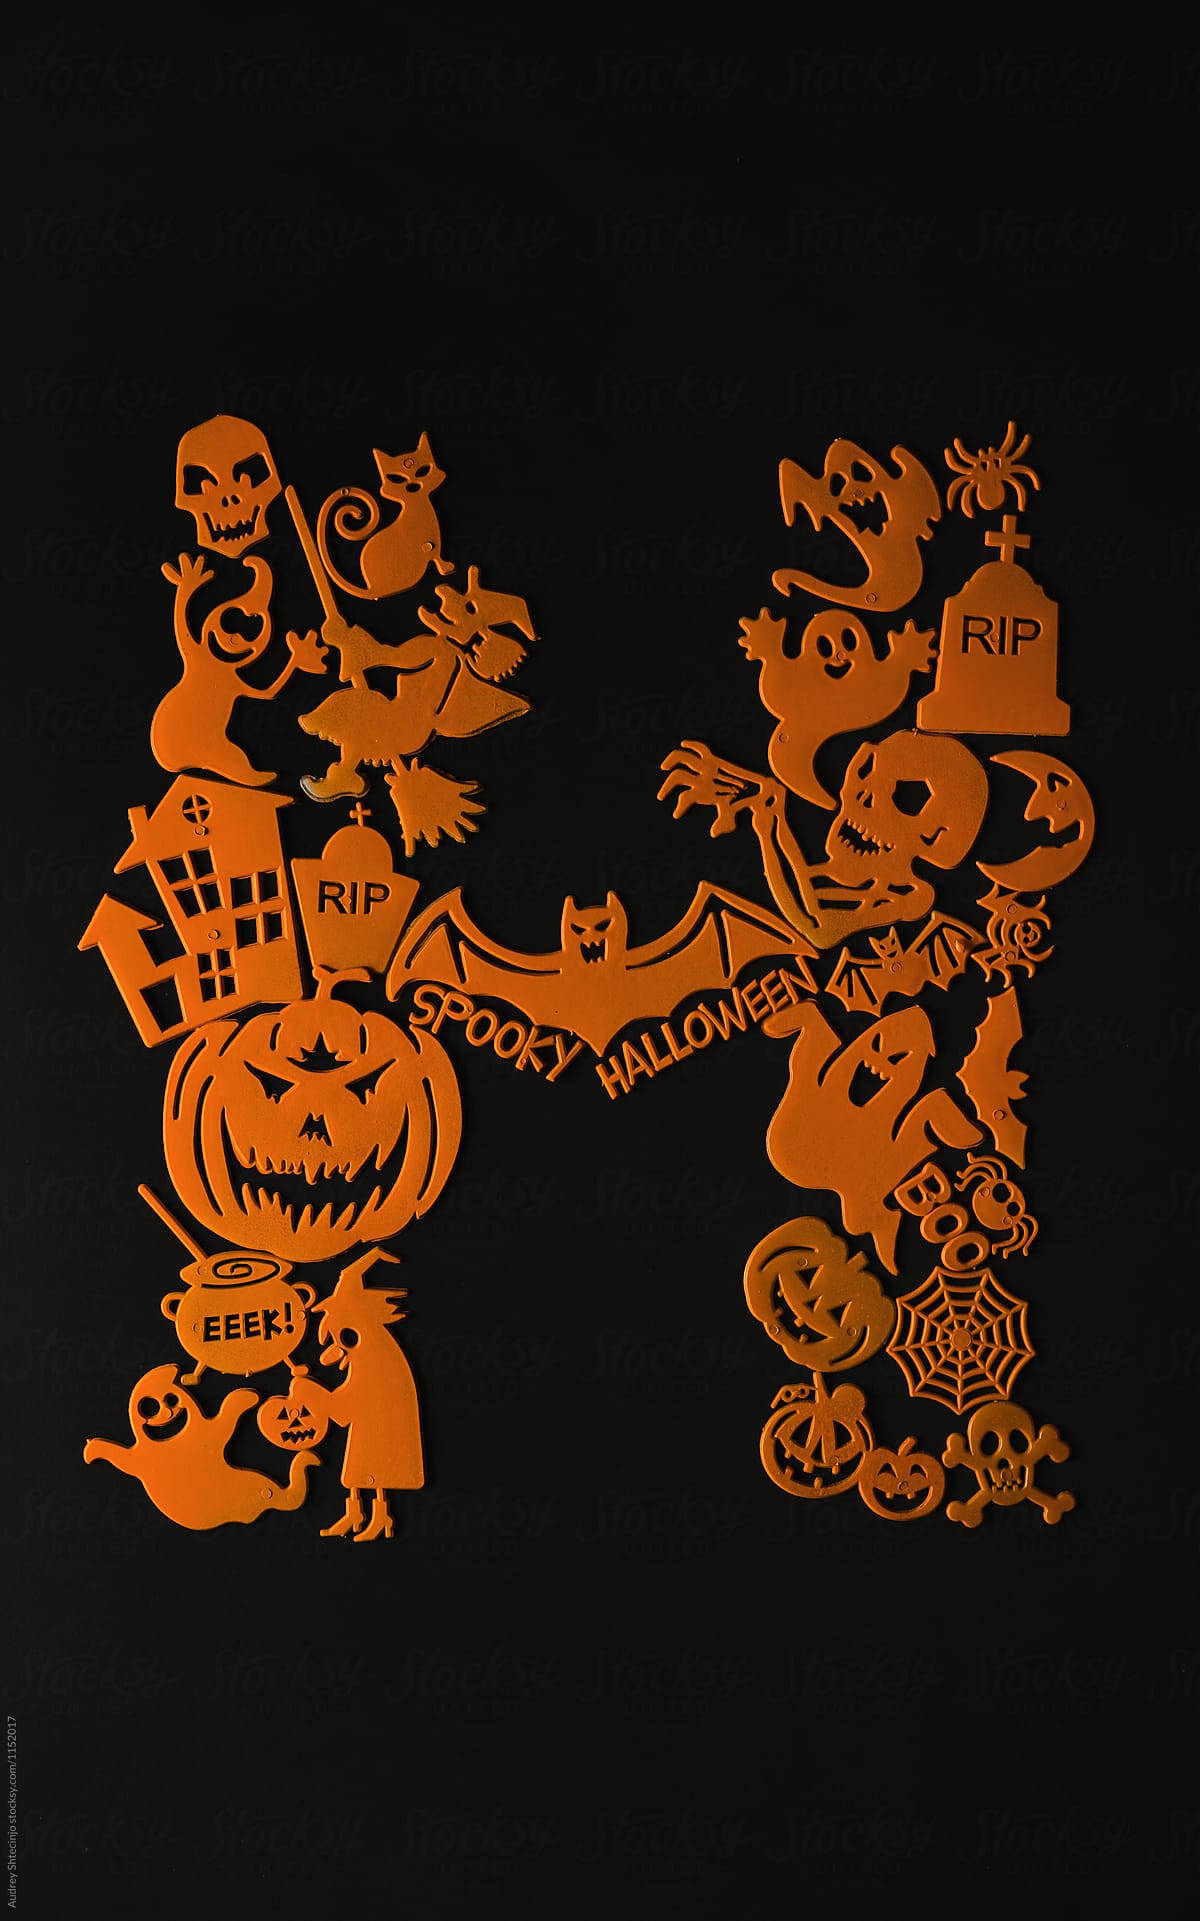 Orange Halloween decoration elements on black baground.